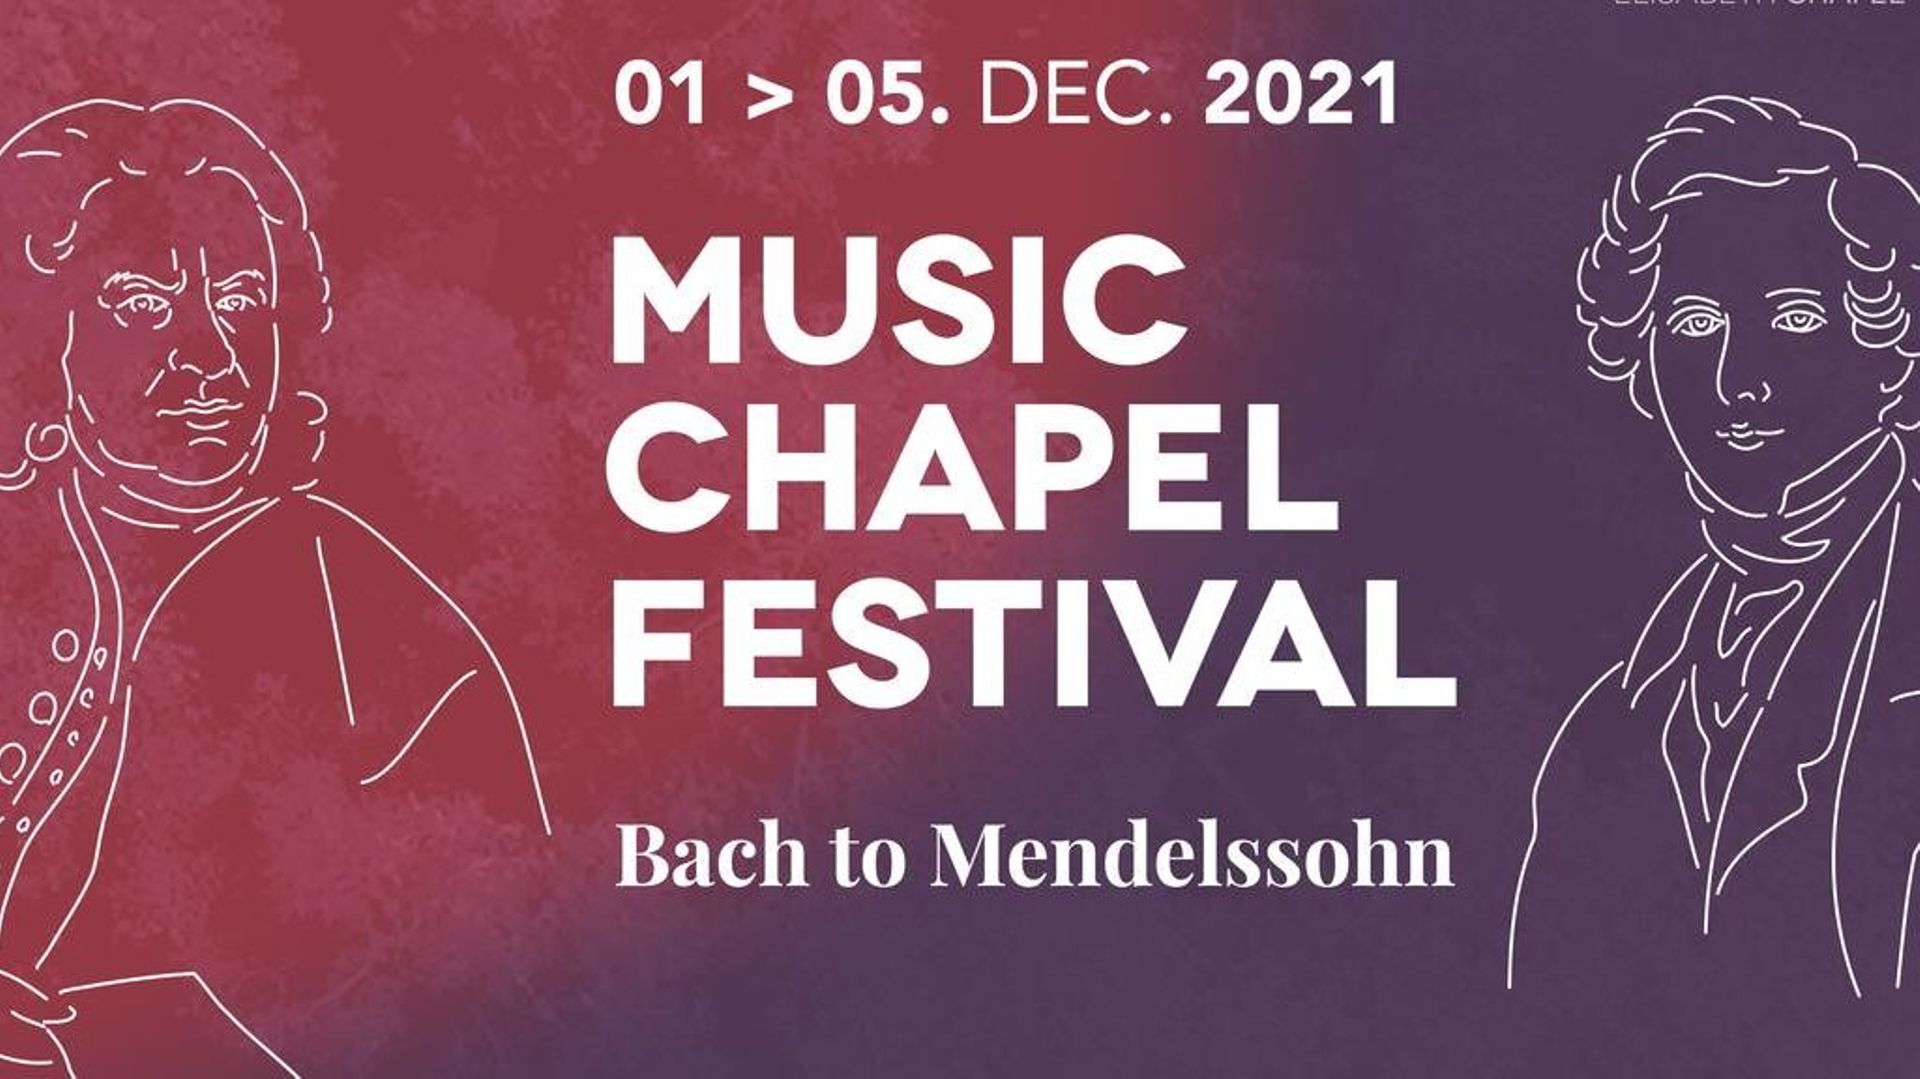 Le Music Chapel Festival vous invite à un voyage musical, de Bach à Mendelssohn